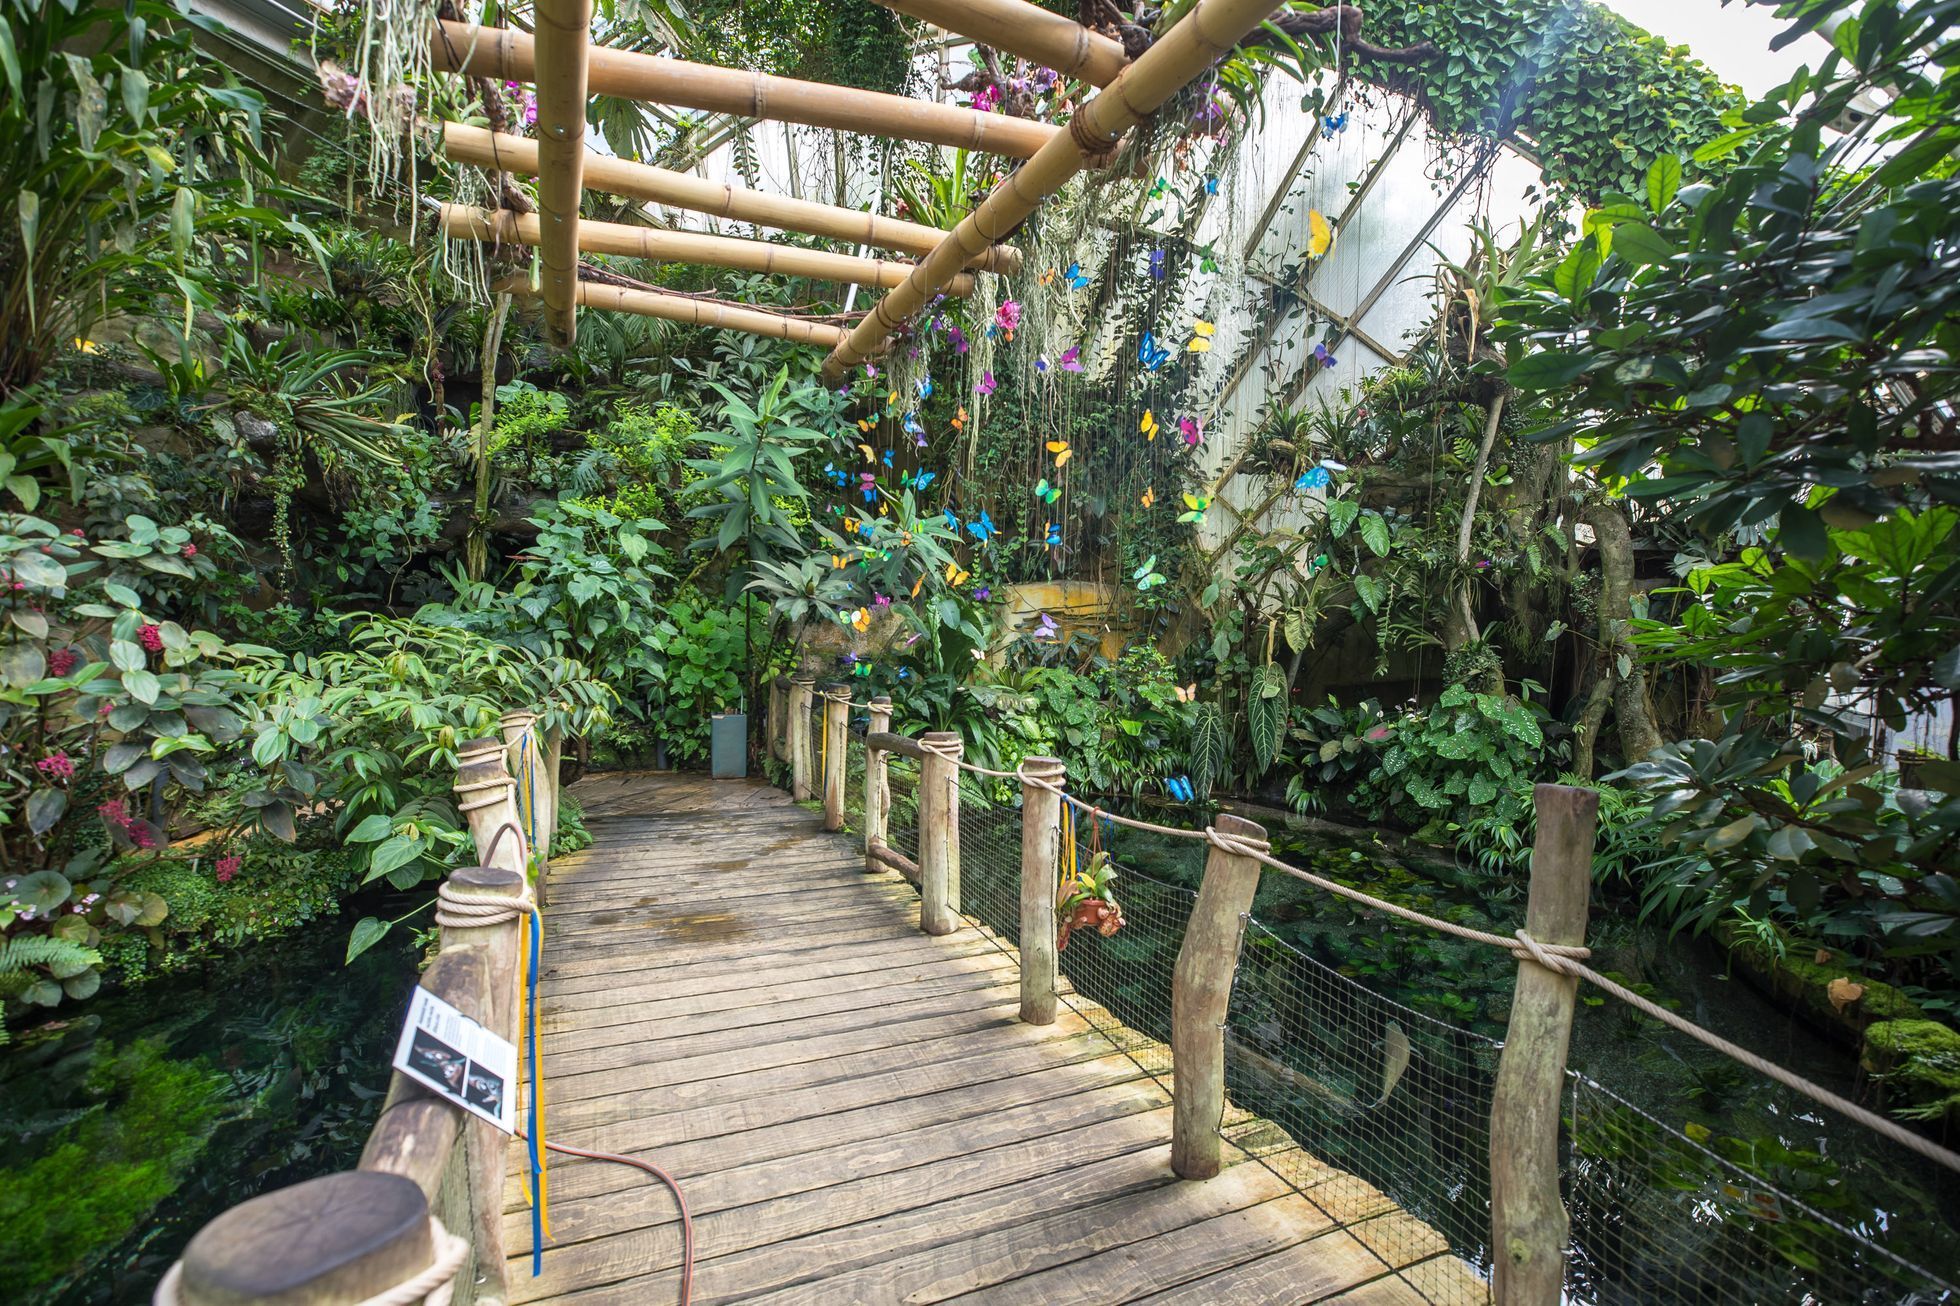 Botanická zahrada zahájila výstavu Motýli, skleník Fata Morgana